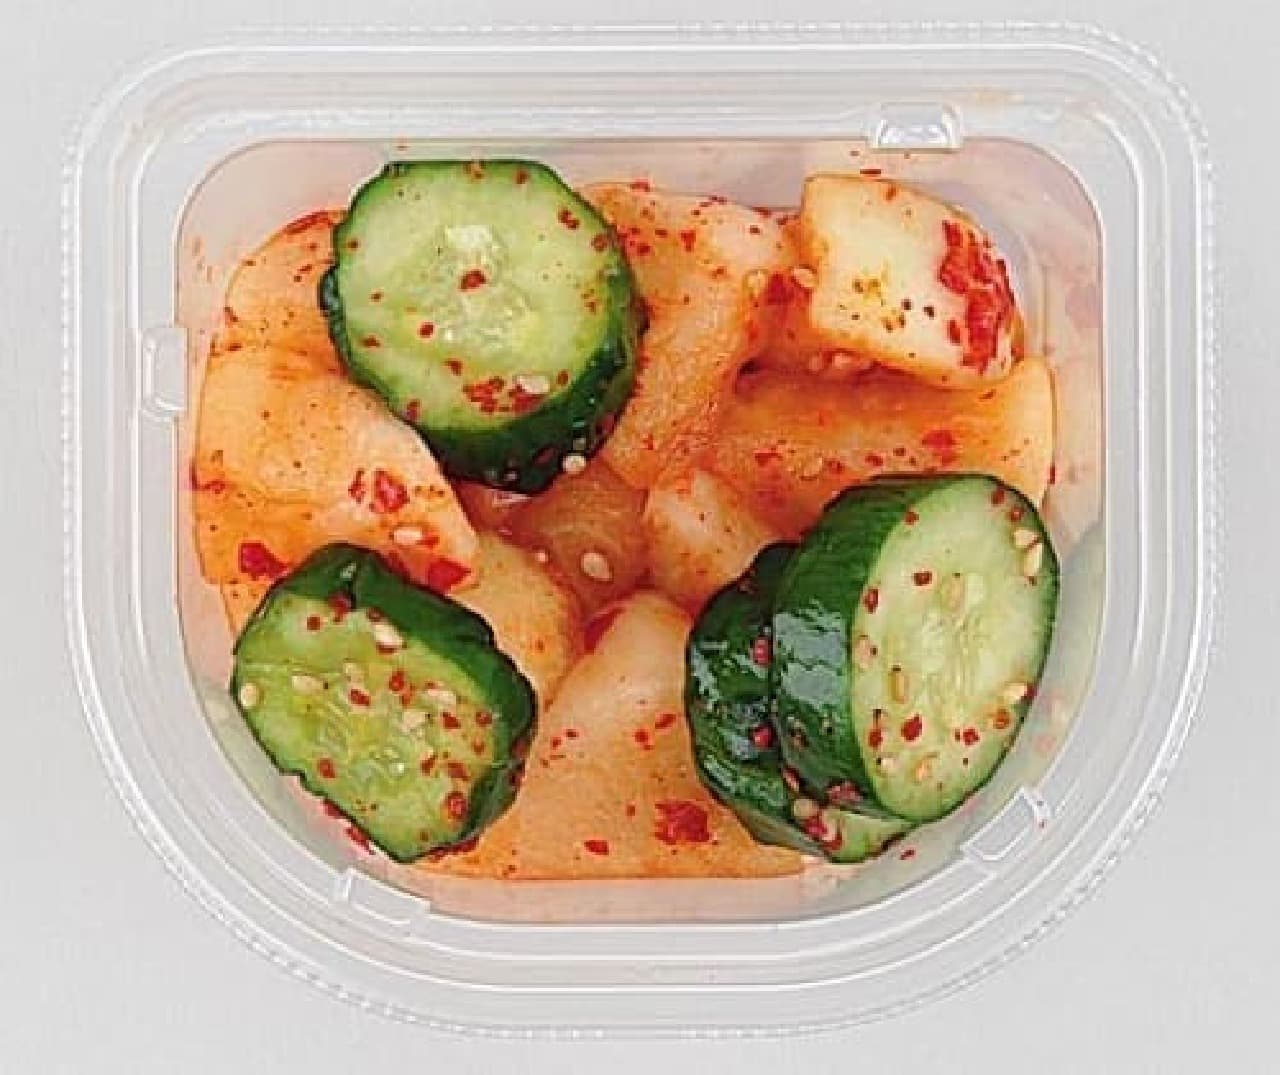 Lawson's "Cup Delicatessen Kimchi Cucumber"